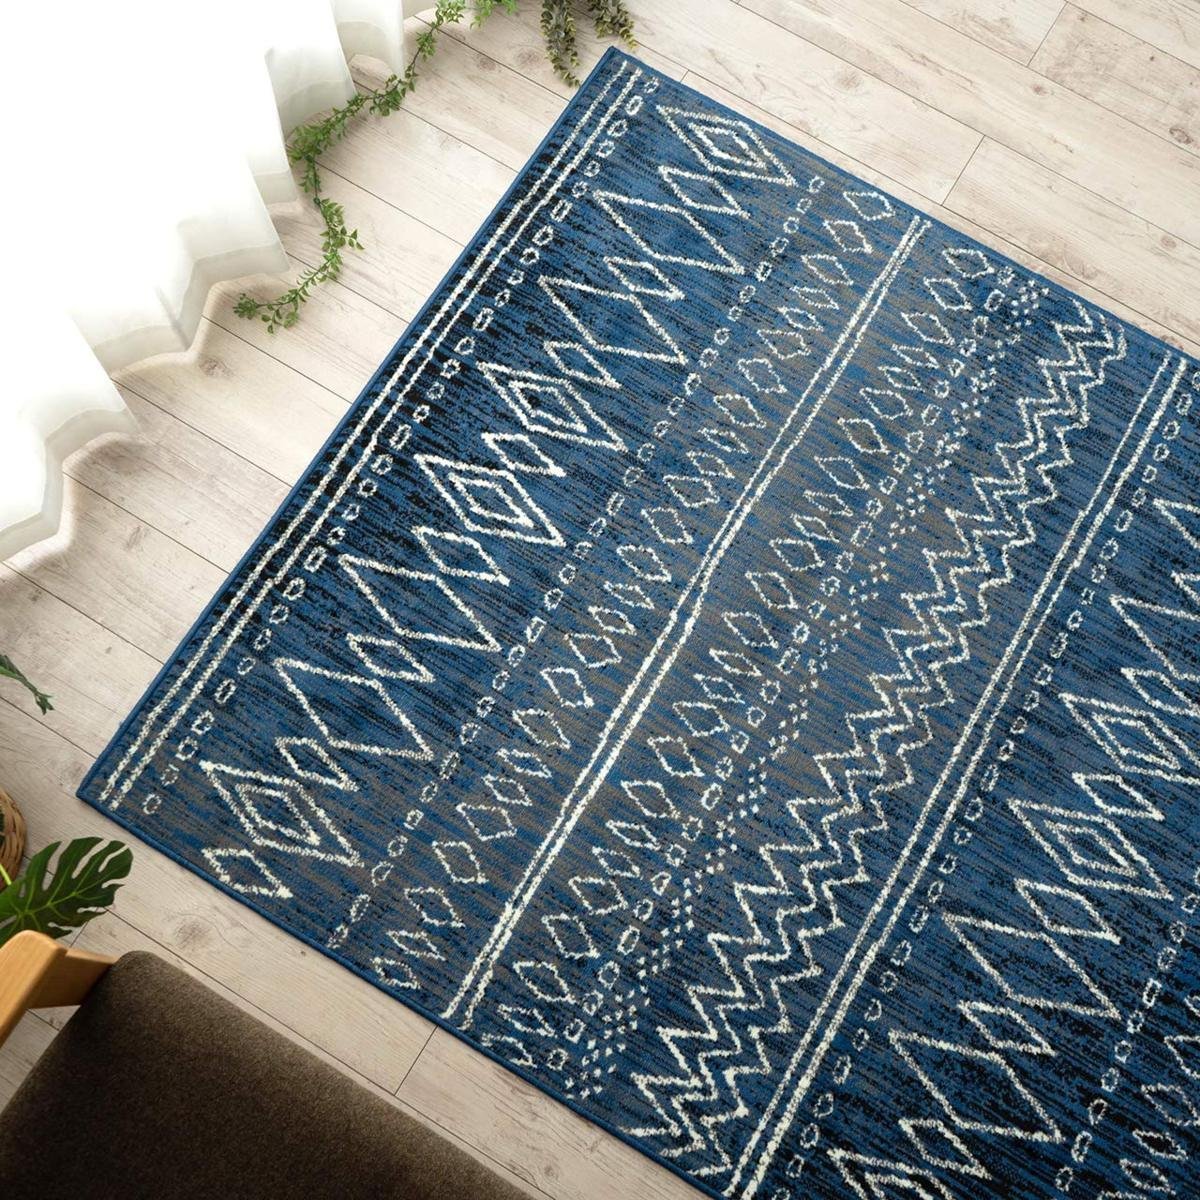 ■■カーペット ラグ マット 絨毯 ベルギー ウィルトン織り 手書き風 ラインデザイン おしゃれ 約200×250cm 3畳 ジーンズ